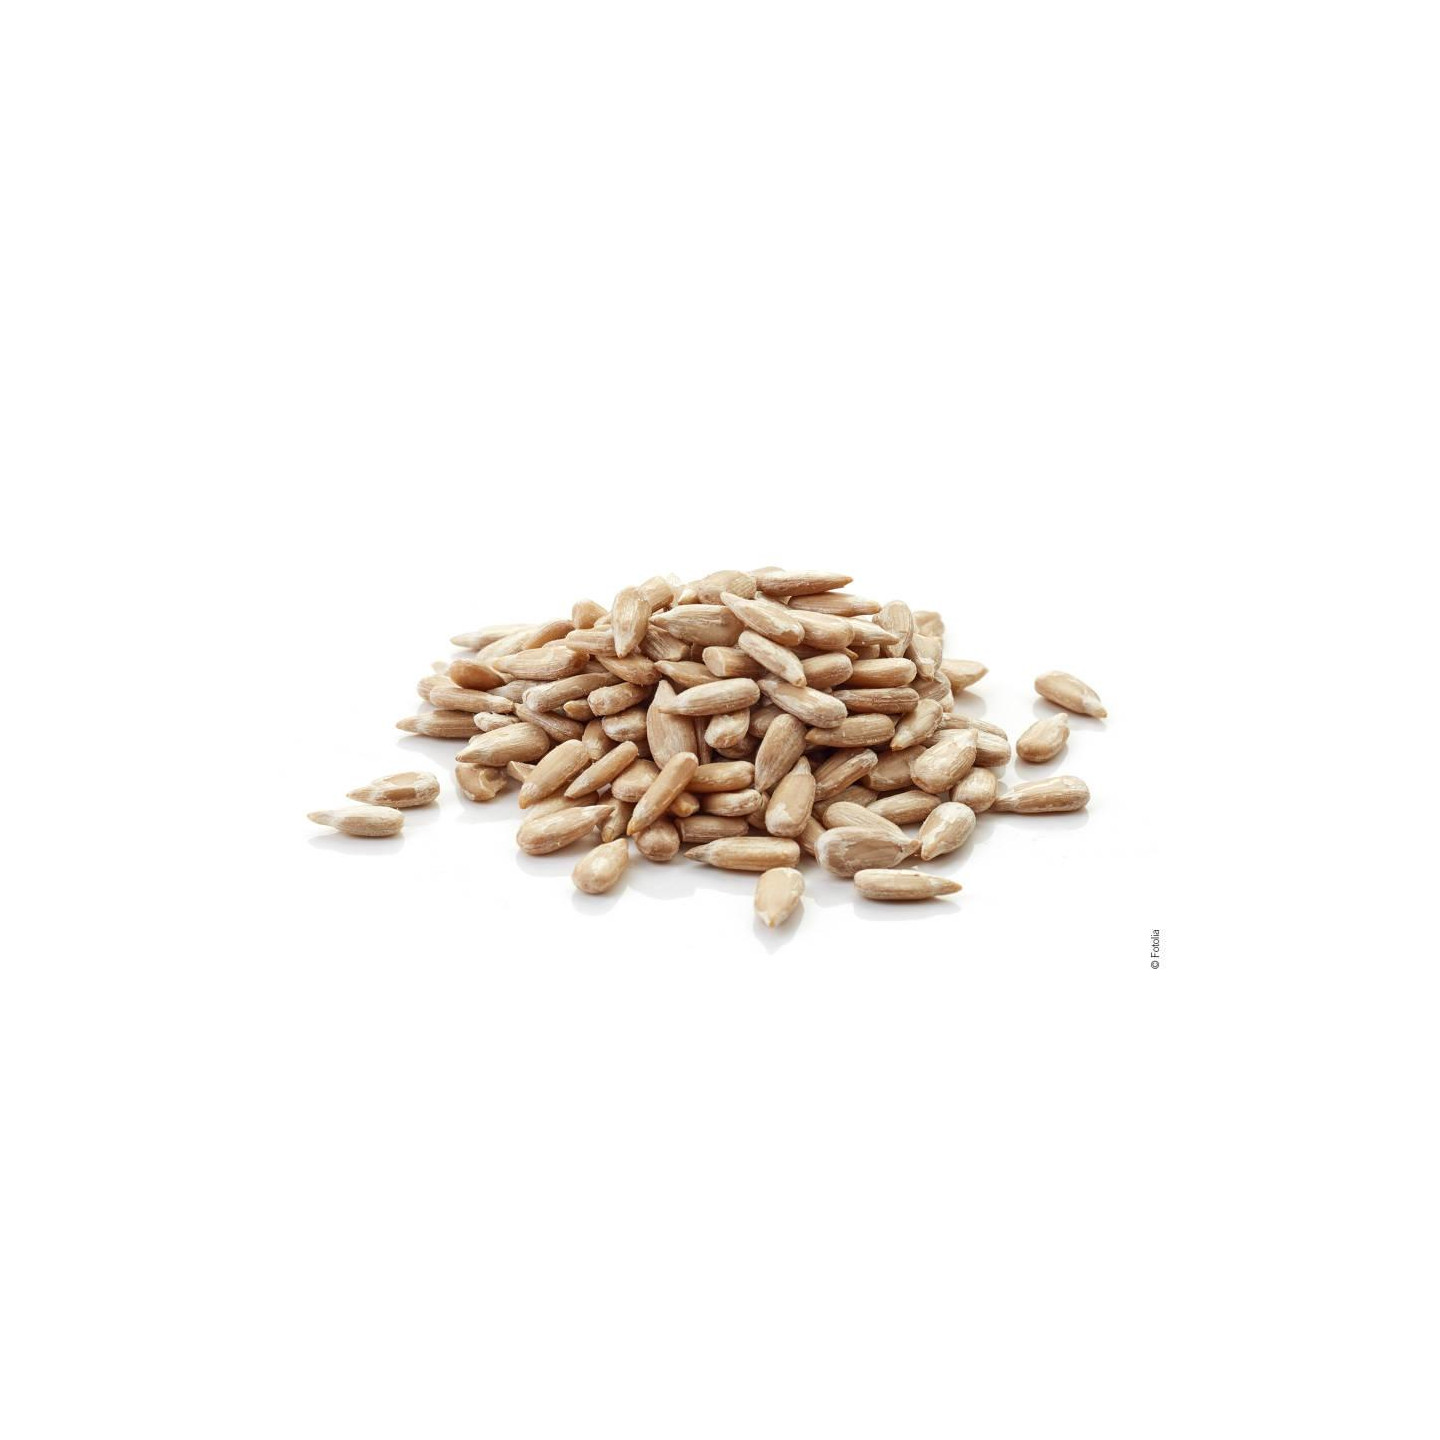 Graines de Tournesol Décortiqué - Détail 1 kg : 3,50 €